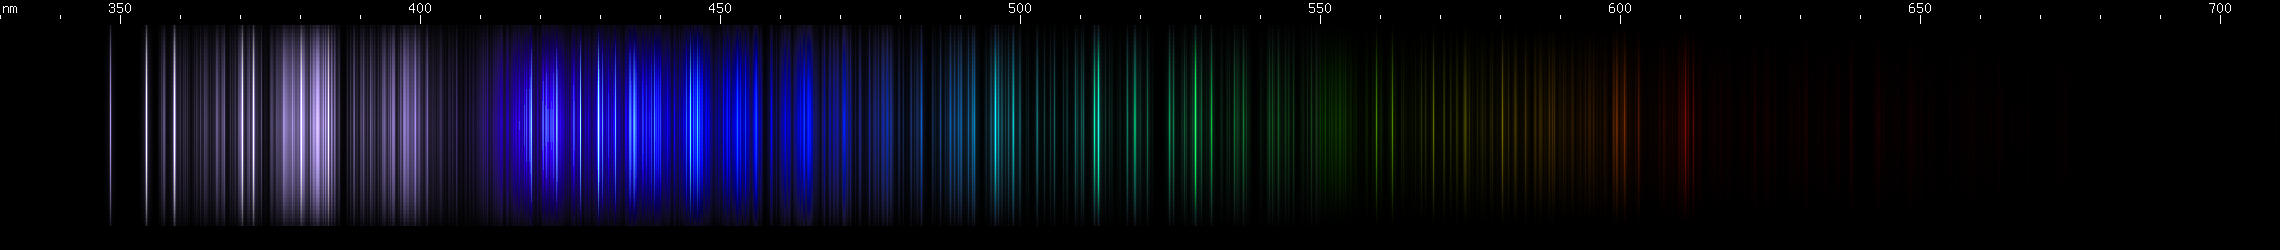 Spectral lines of Neodymium.